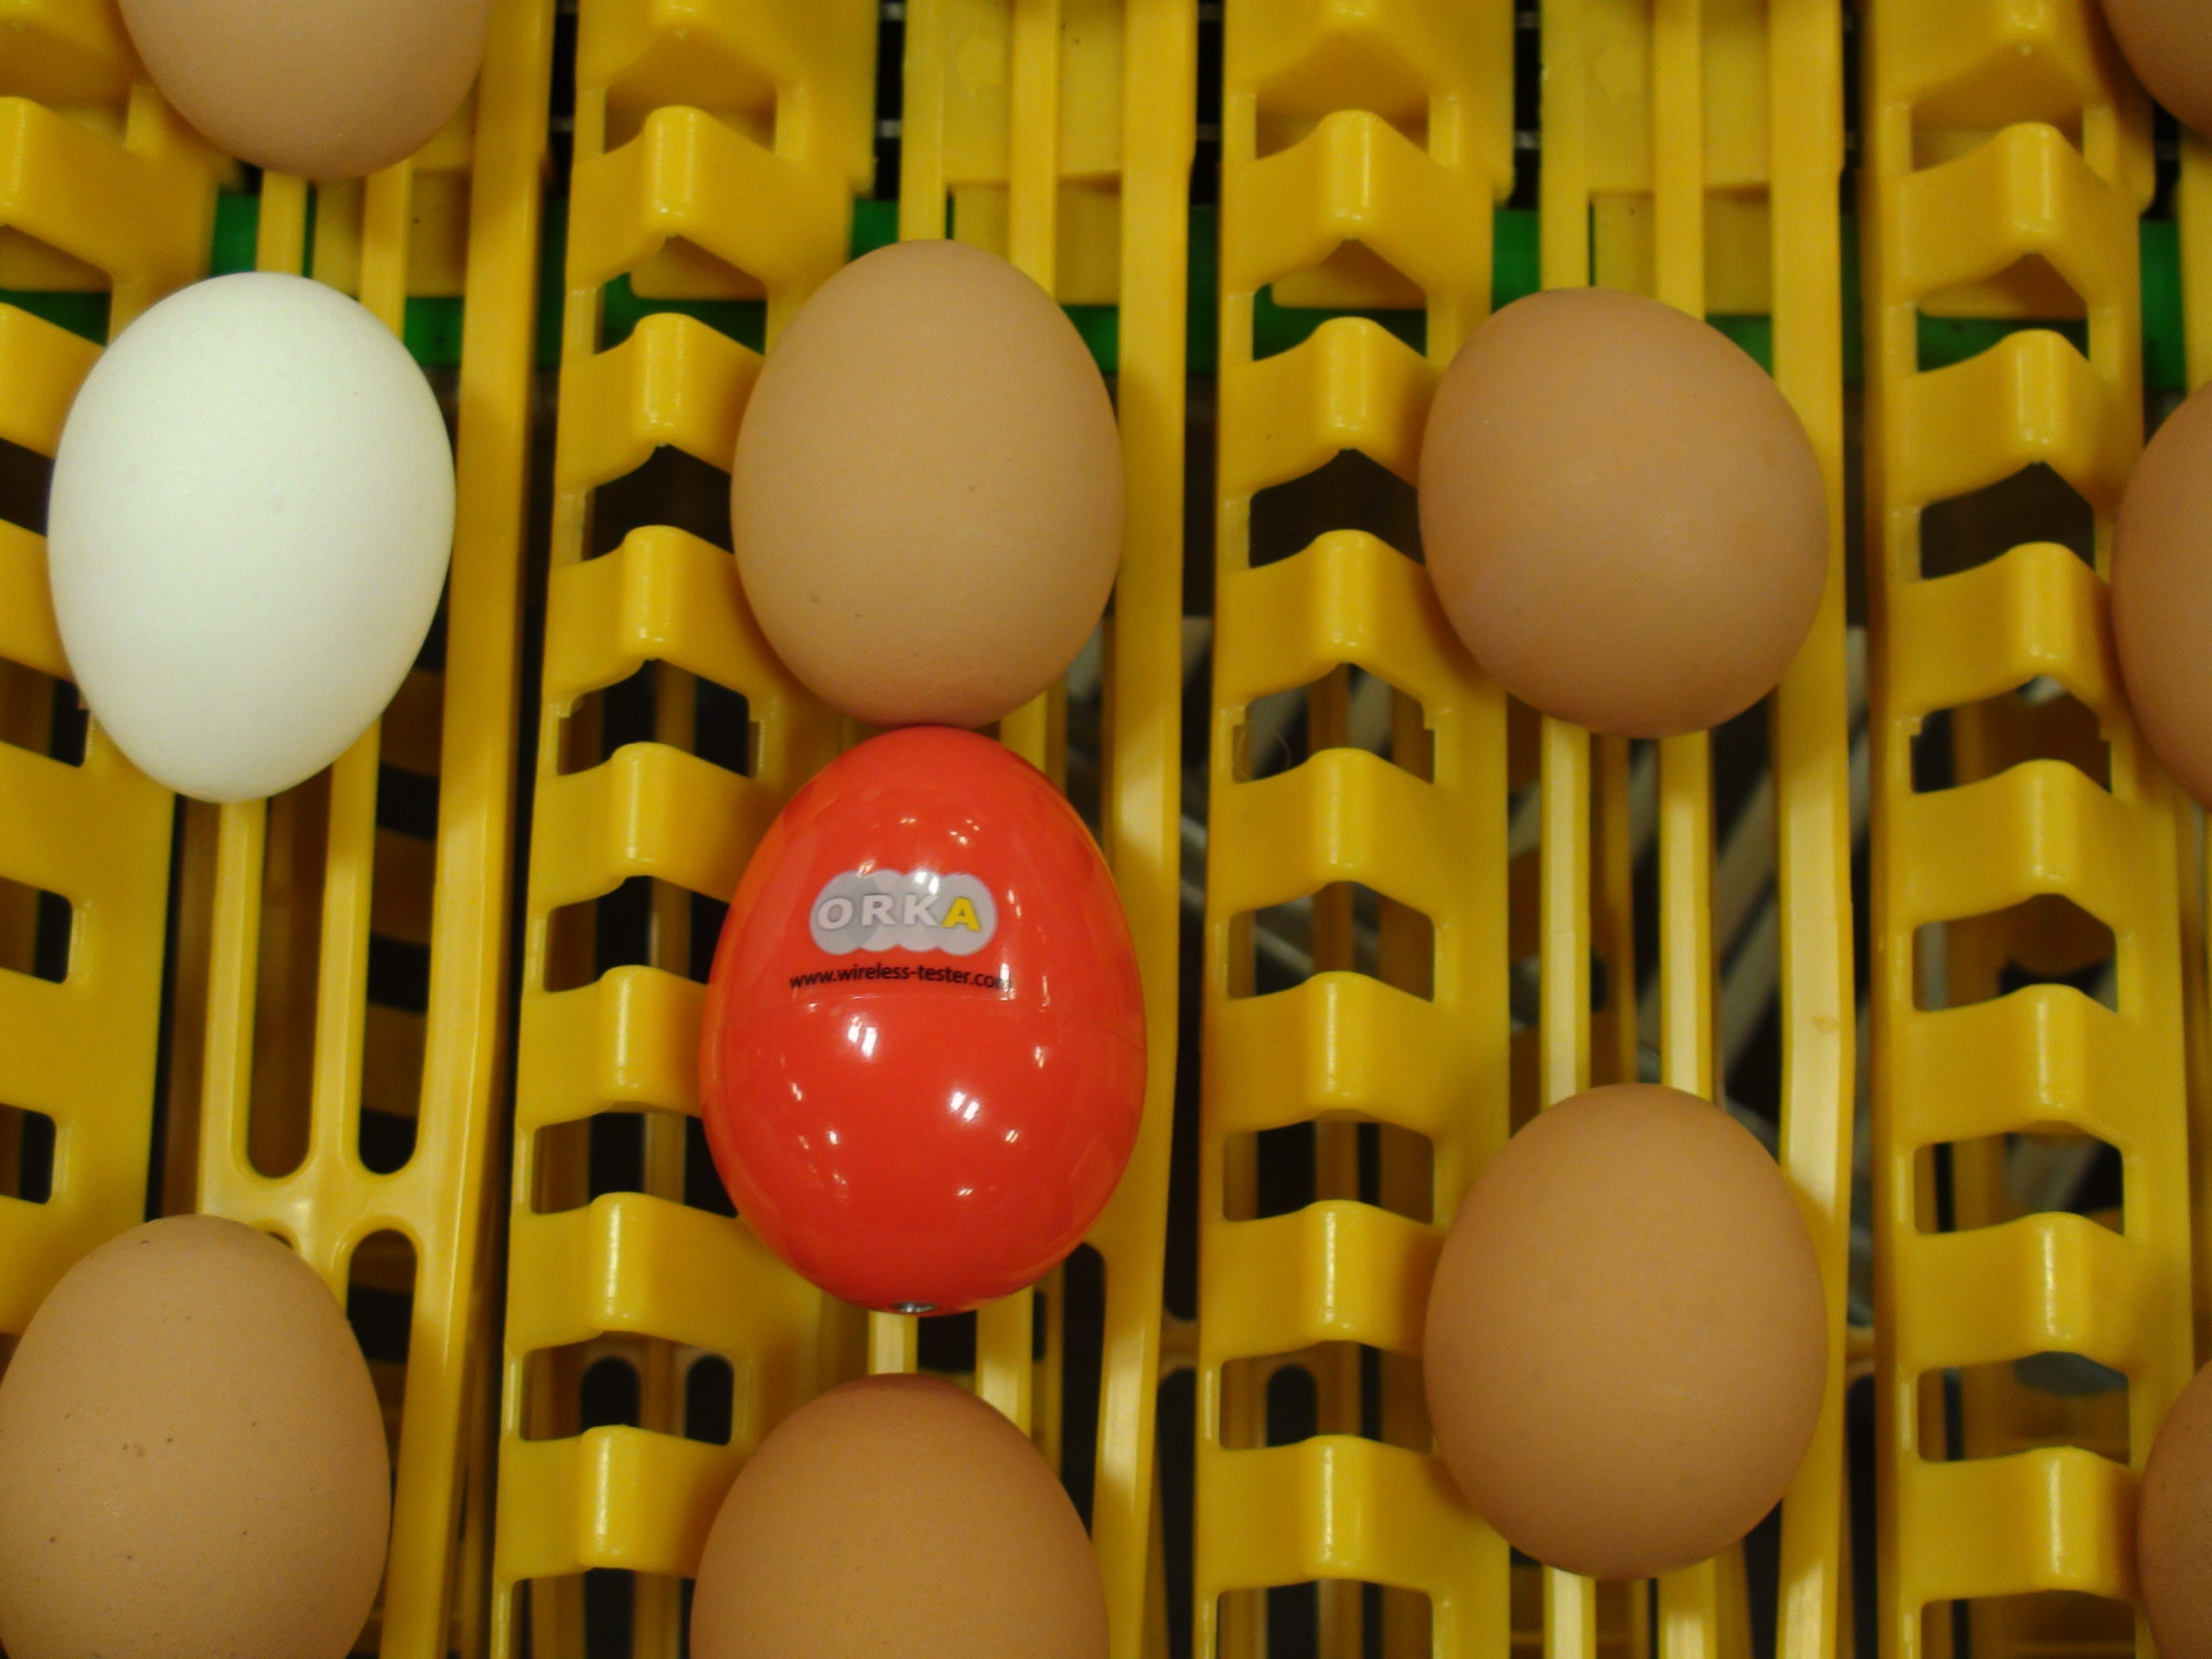 Датчик на яйцо в инкубаторе. Датчик температуры яйца Egg sensor. Яйцо Orka. Лучшие датчики на яйцо.